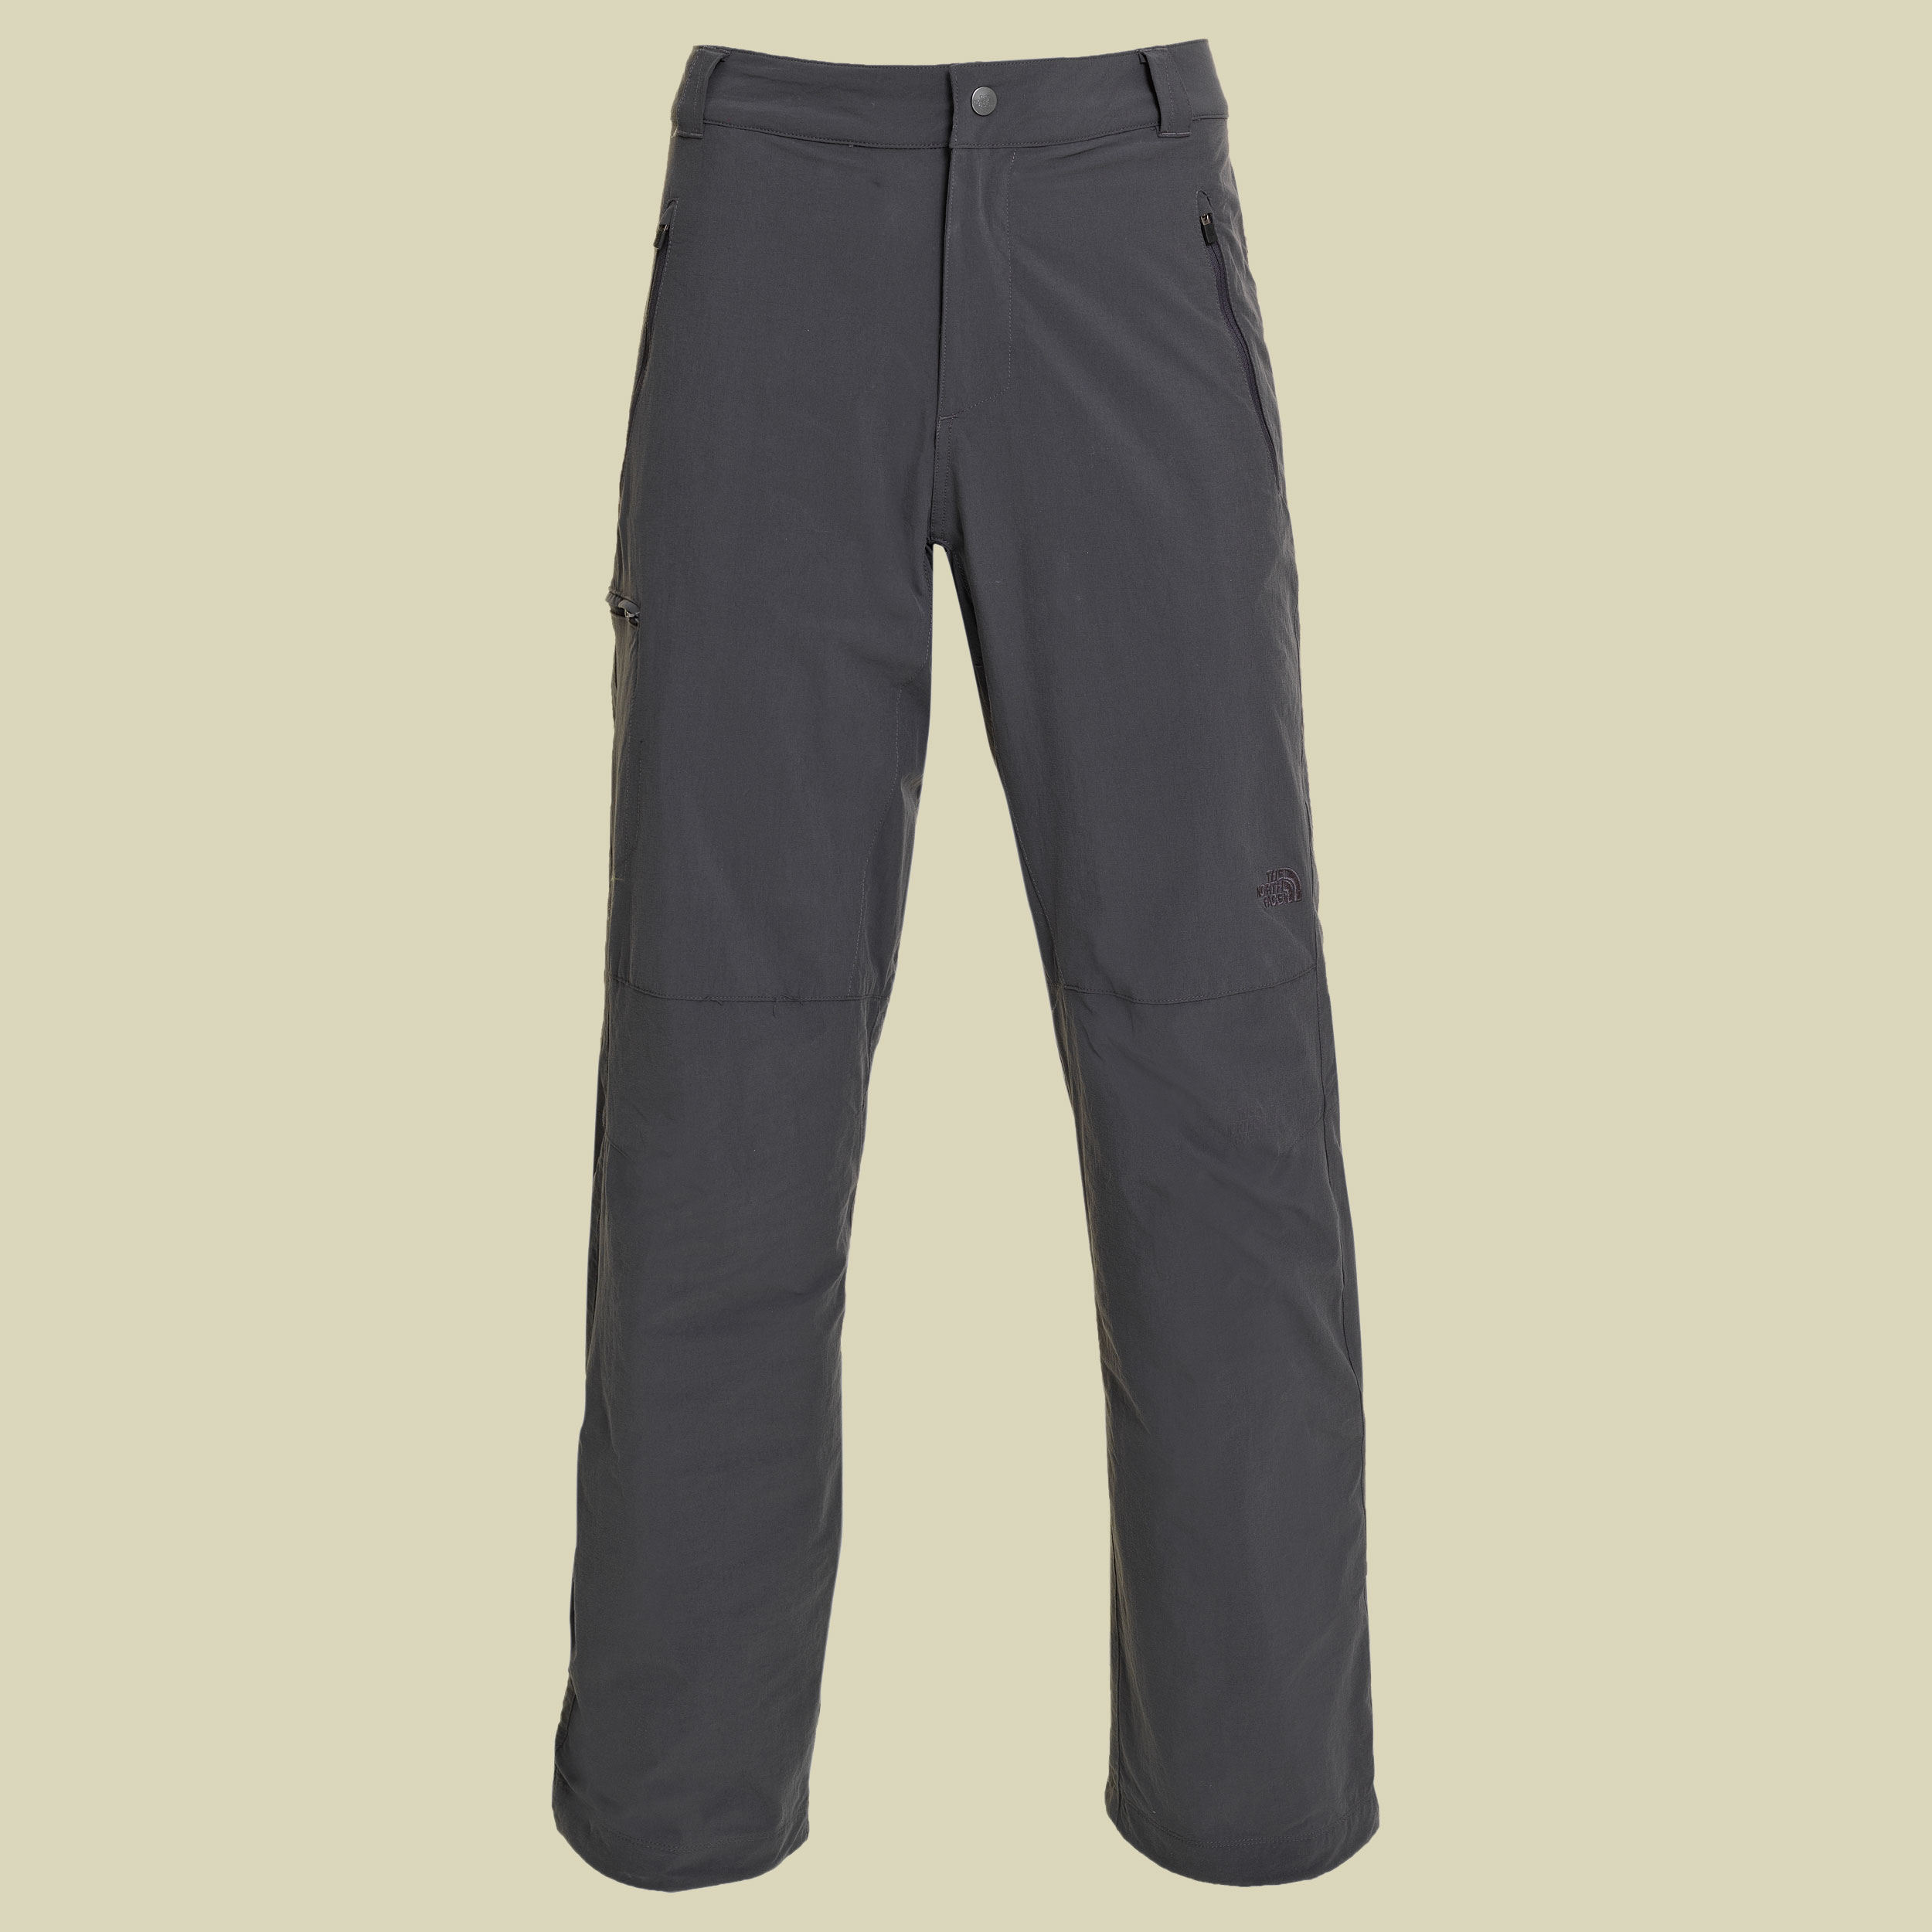 Men's Renshi Insulated Pant Größe 34 Farbe asphalt grey